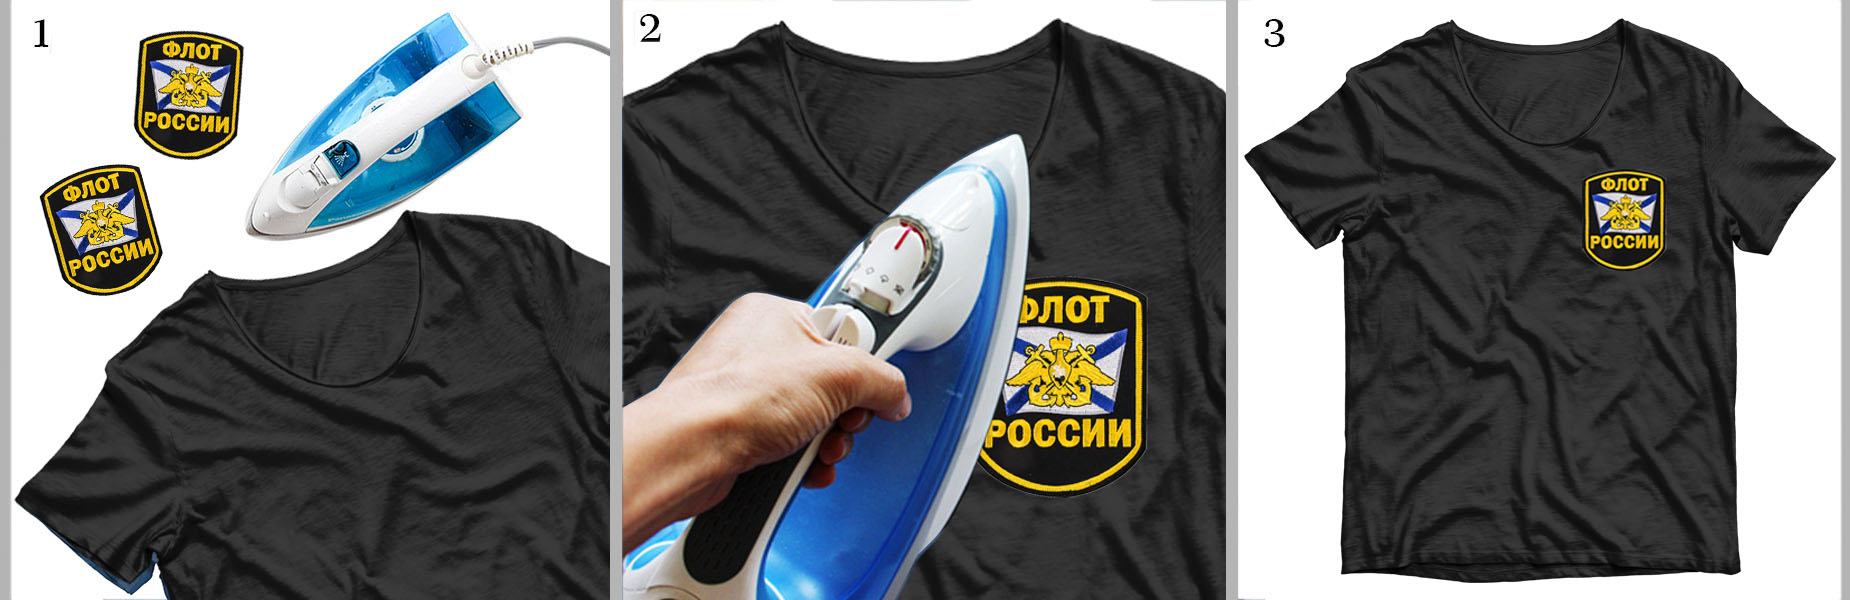 Купить шеврон "Флот России" авторского дизайна для футболок